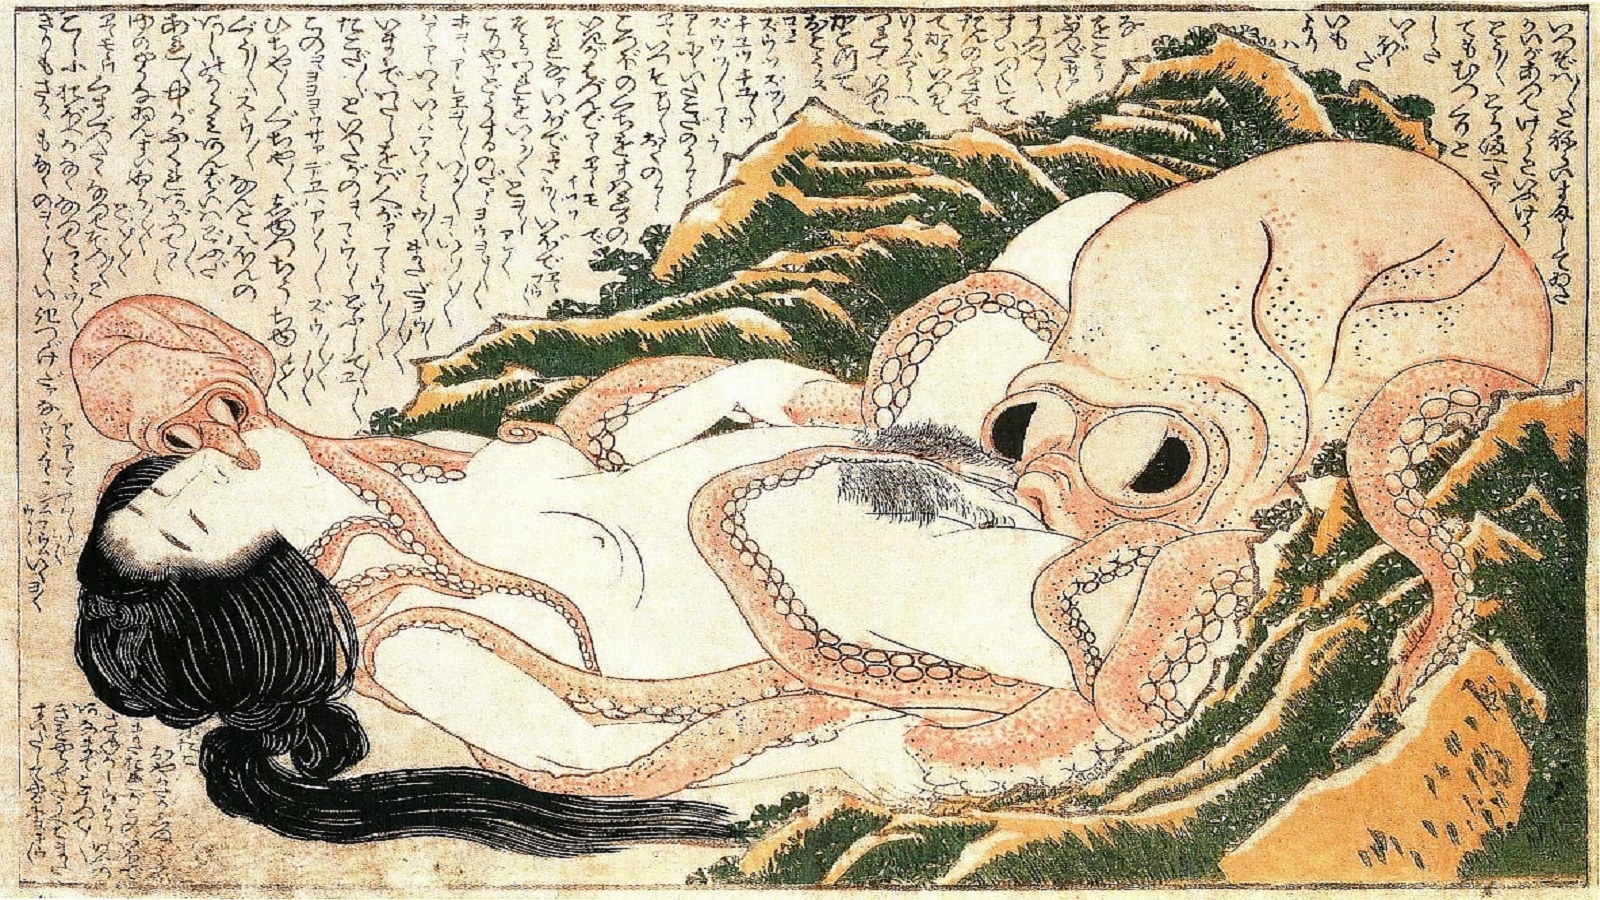 مرايا الفن الياباني: جِنس المرأة والأخطبوط... وفان غوخ متأثراً